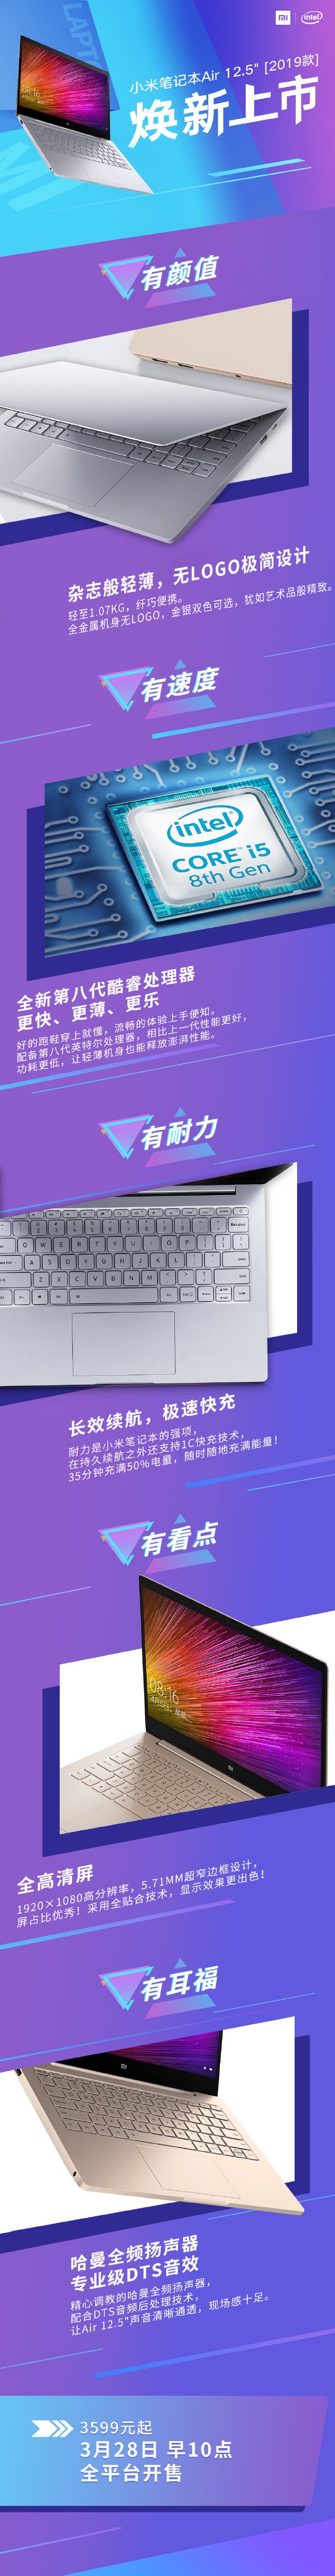 new Xiaomi Notebook Air